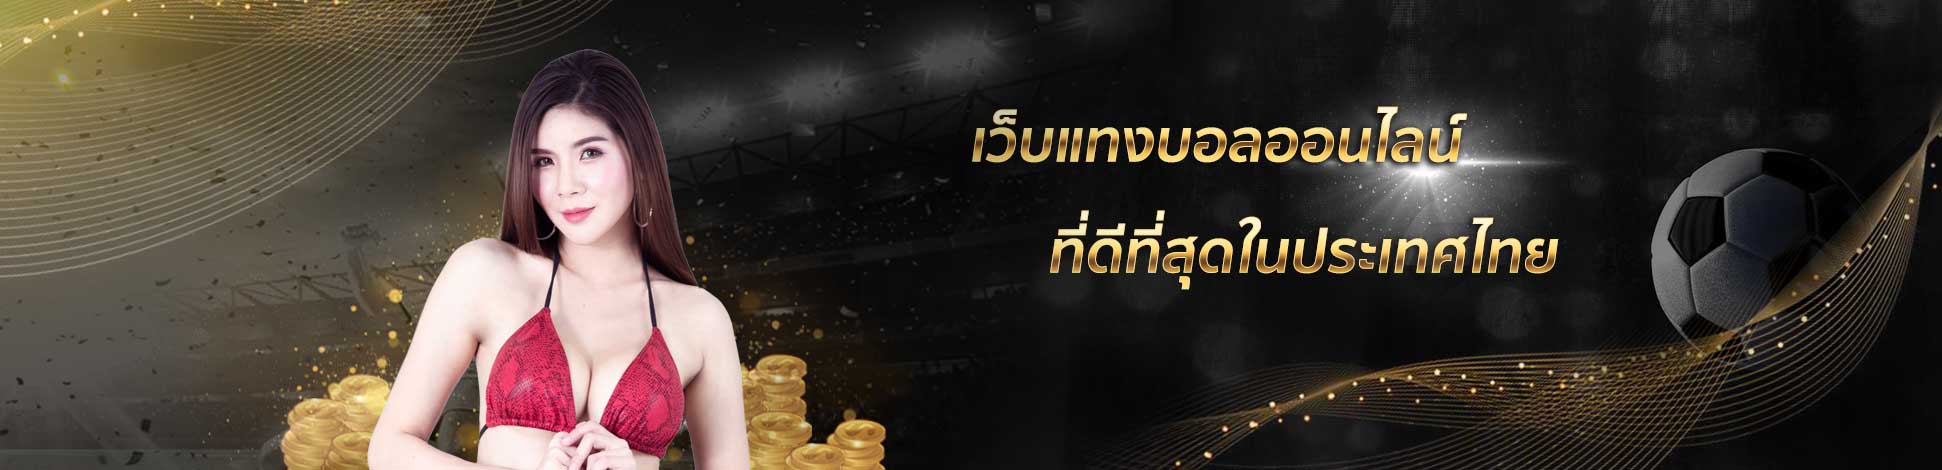 เว็บแทงบอลออนไลน์ UFABET ที่ดีที่สุดในประเทศไทย